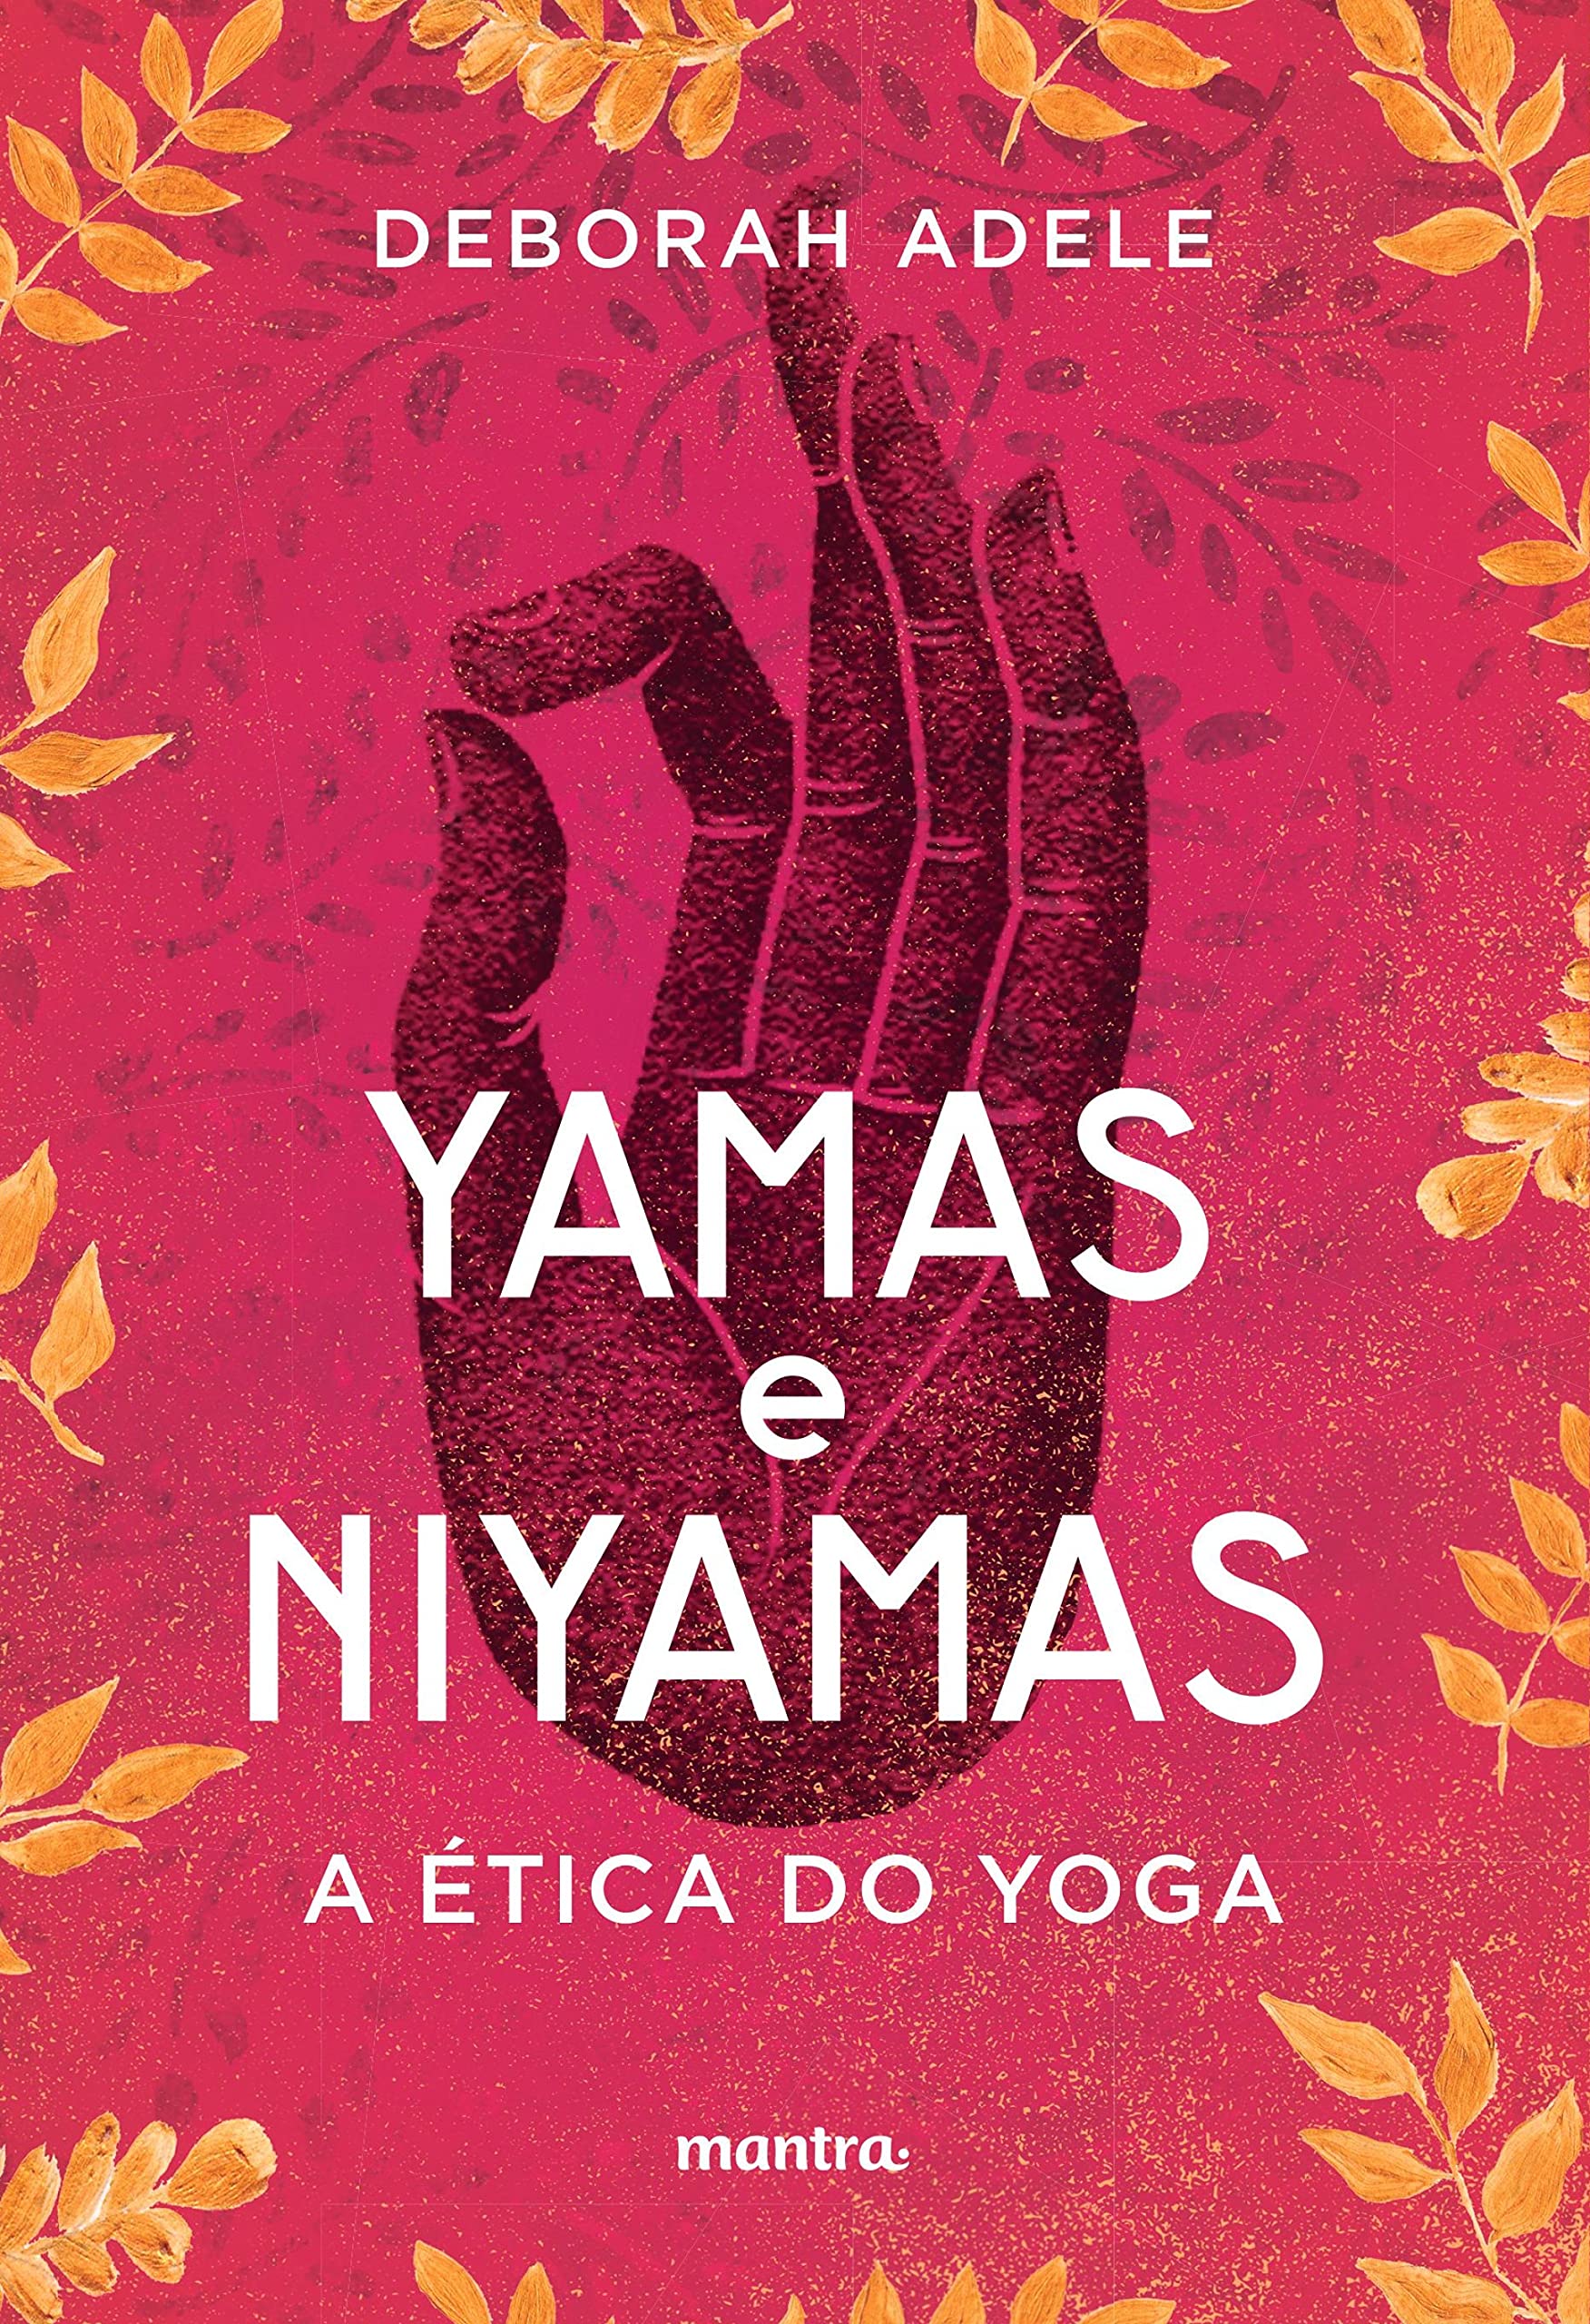 Dia Internacional do Yoga: confira dicas de livros incríveis sobre a prática